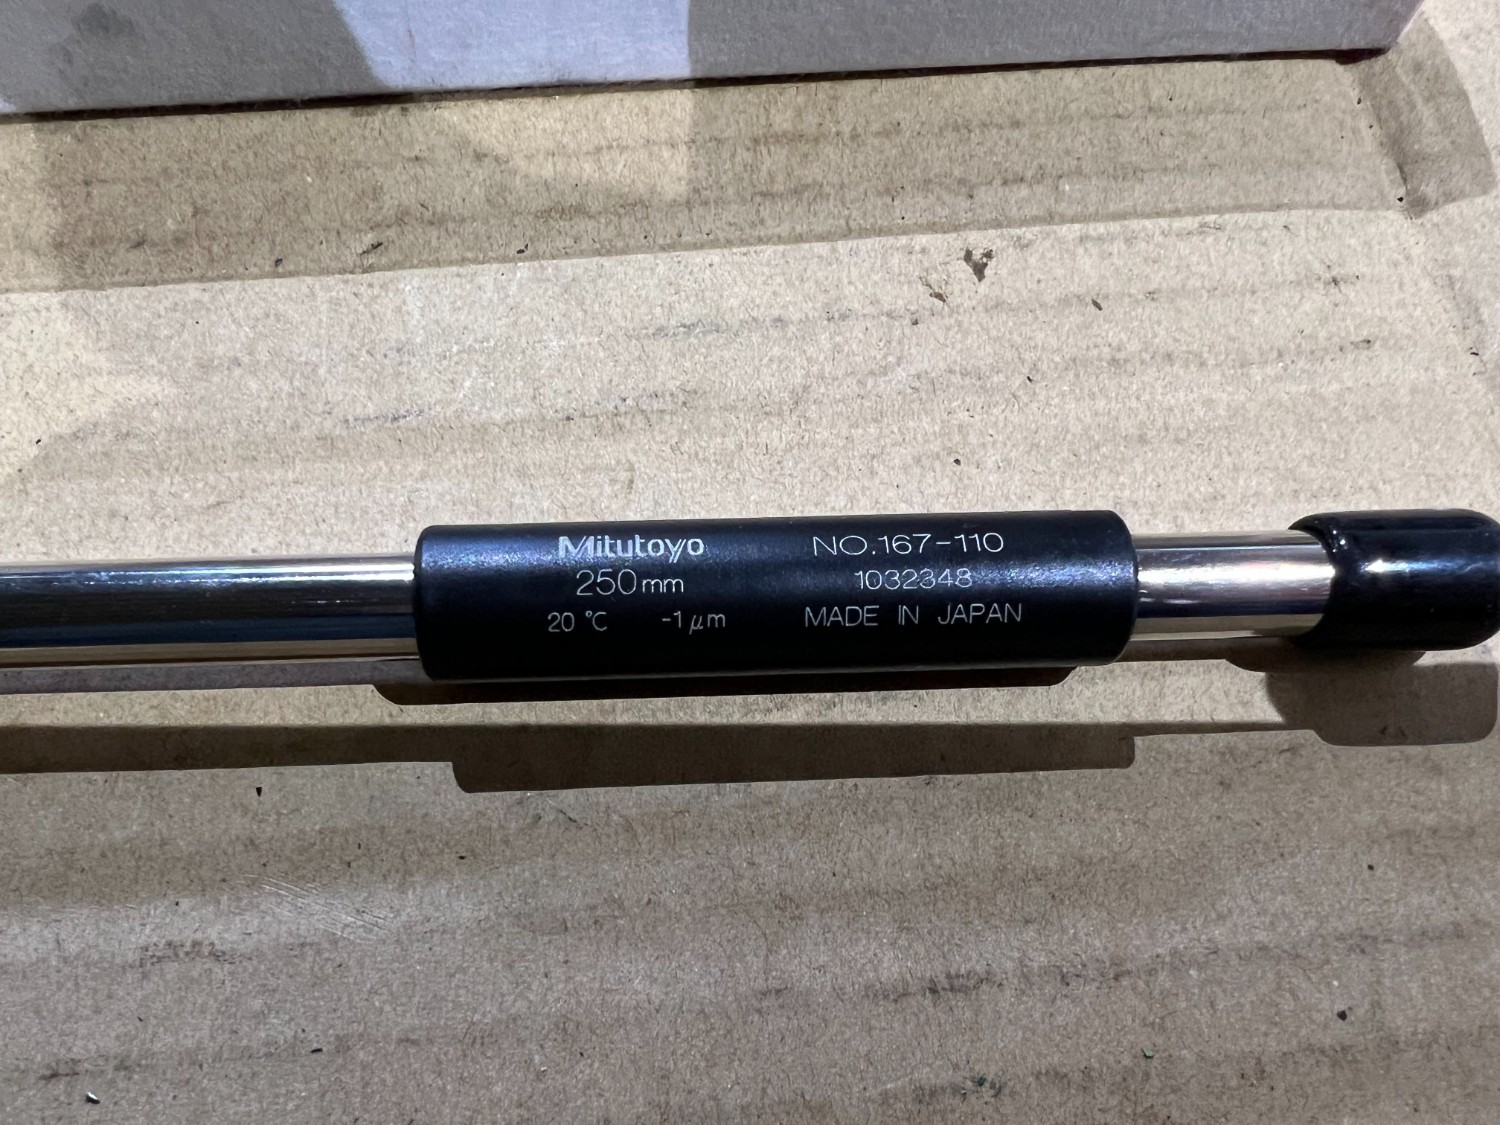 中古Inside micrometer 【マイクロメータ基準棒】167-110 MB-250 ミツトヨ/Mitutoyo